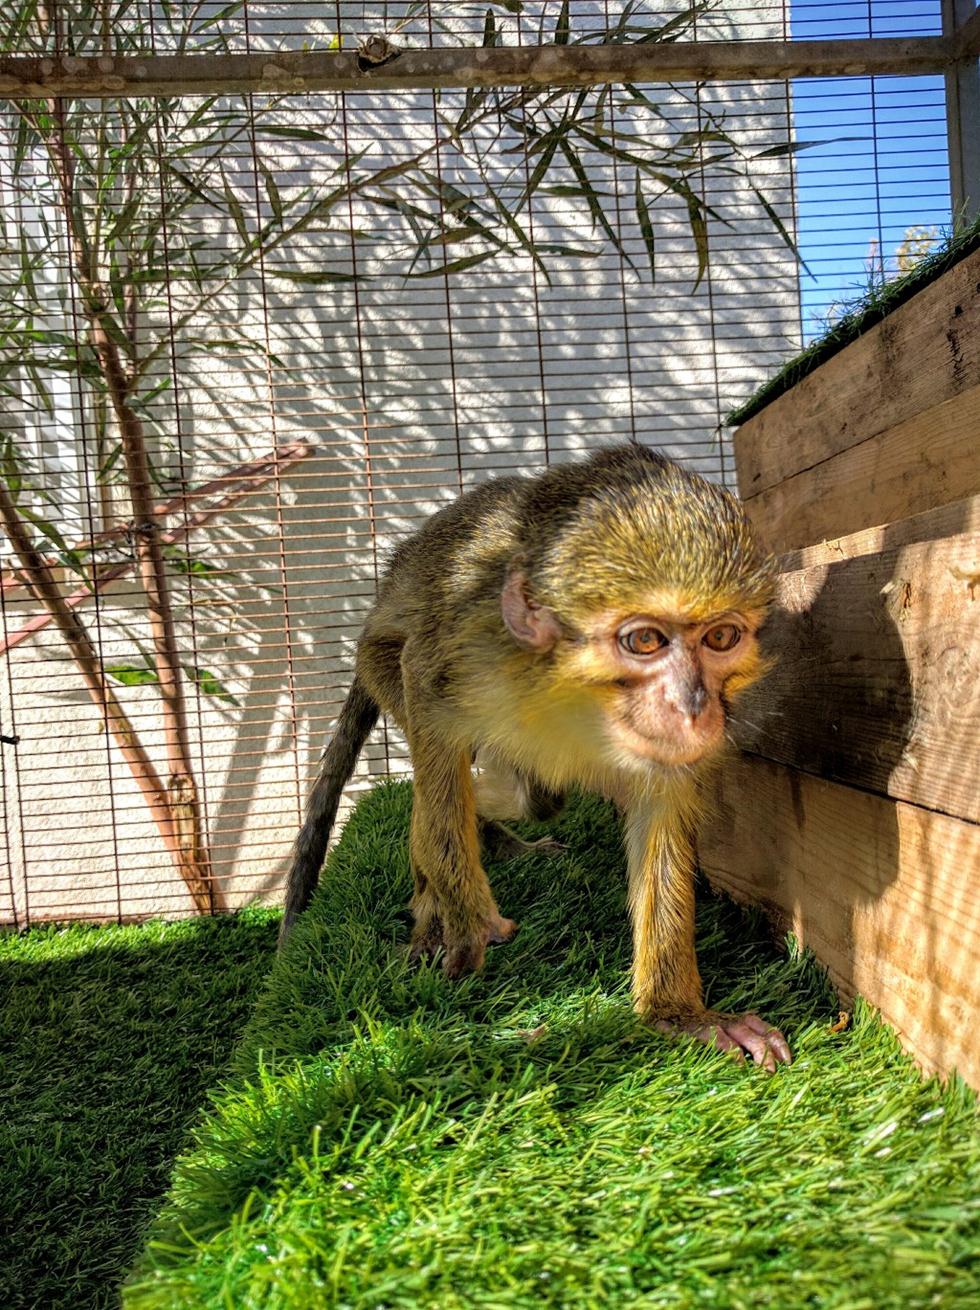 יאשה במקלט הקופים בבן שמן (צילום: רשות הטבע והגנים) (צילום: רשות הטבע והגנים)